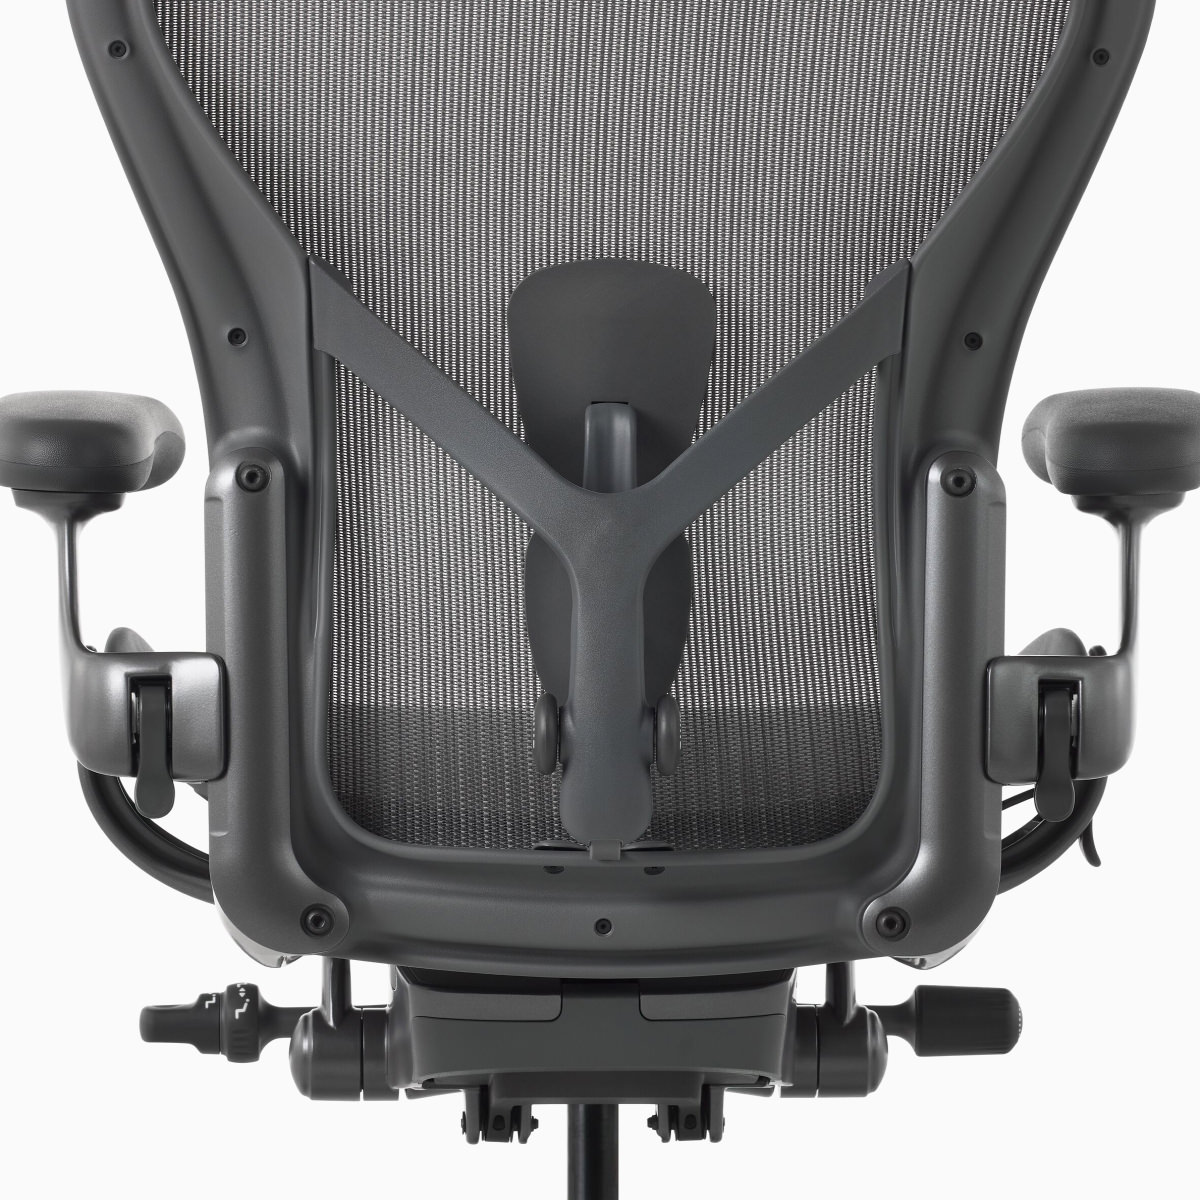 Rückansicht eines Aeron Stuhls mit anpassbarer PostureFit SL.